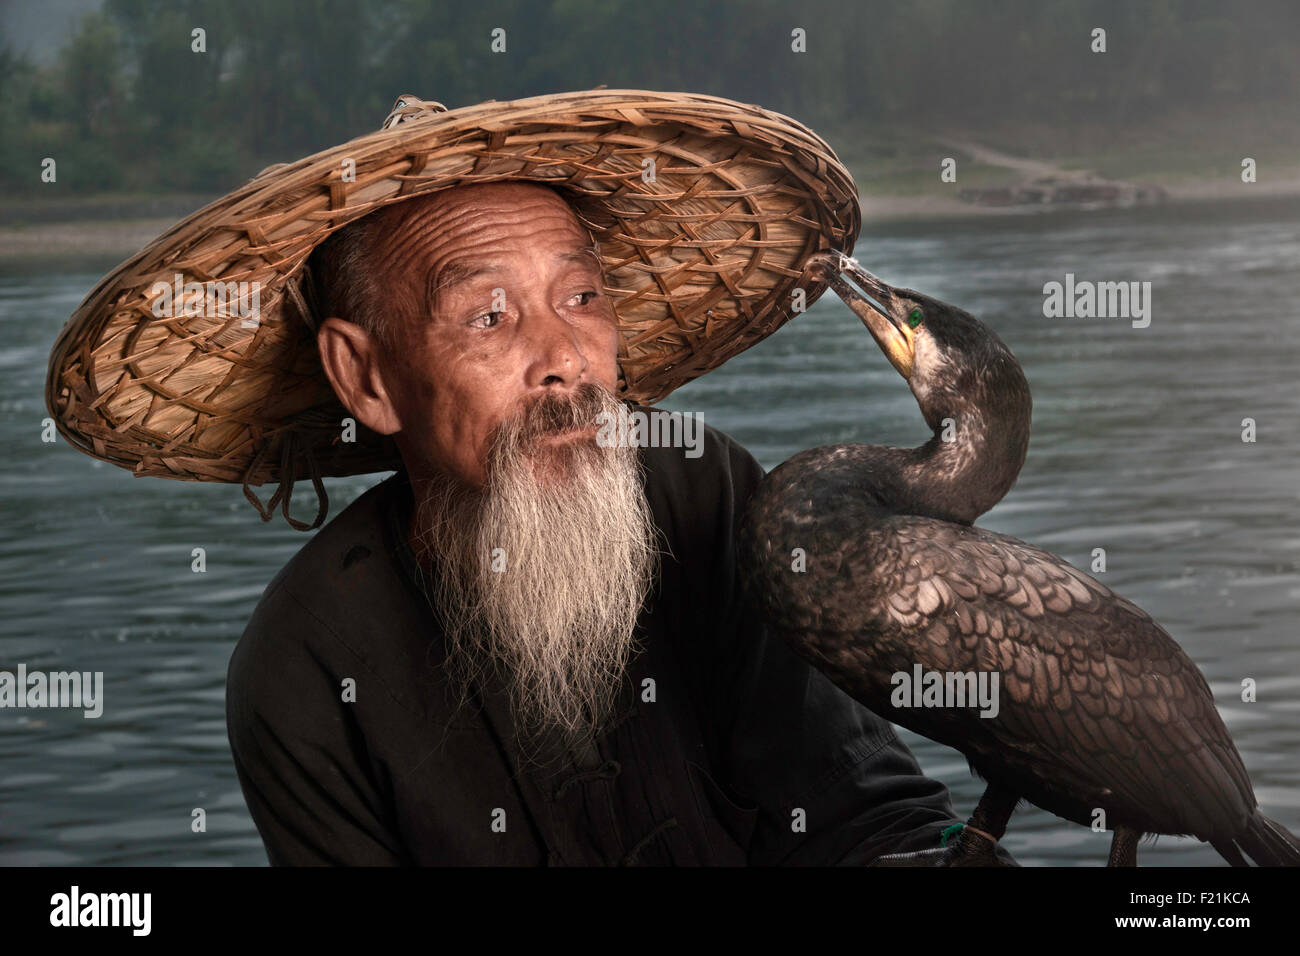 Cormorano cinese pescatore con una lunga barba guarda il suo uccello beccare il suo cappello di bambù, il Fiume Li, Xingping, Cina e Asia Foto Stock